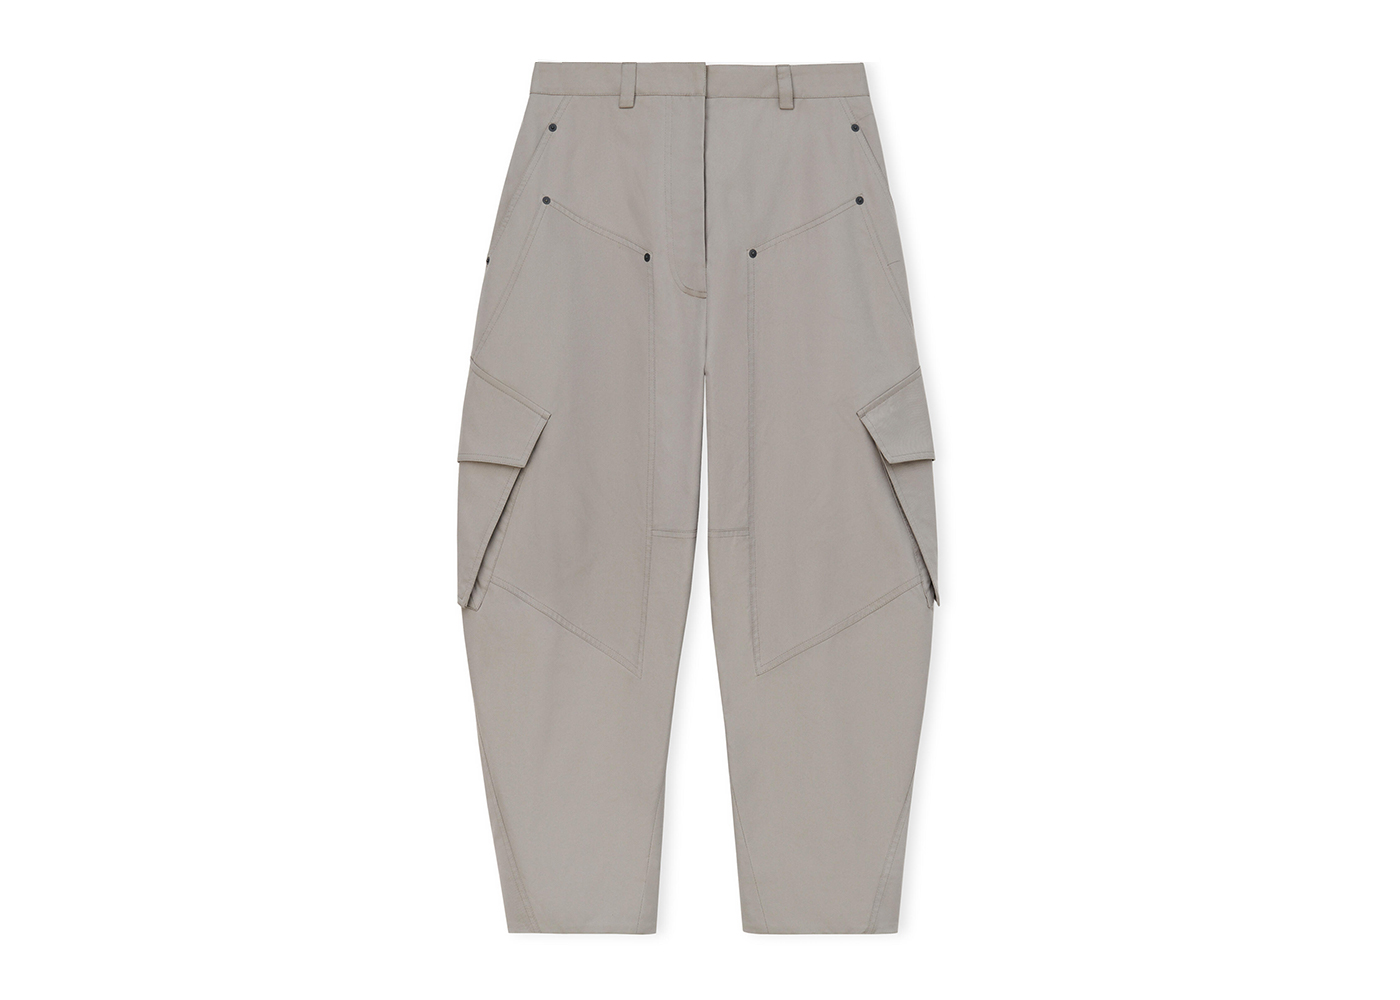 Casual trousers Brunello Cucinelli  Cotton gabardine pants   M289LE1740C6260